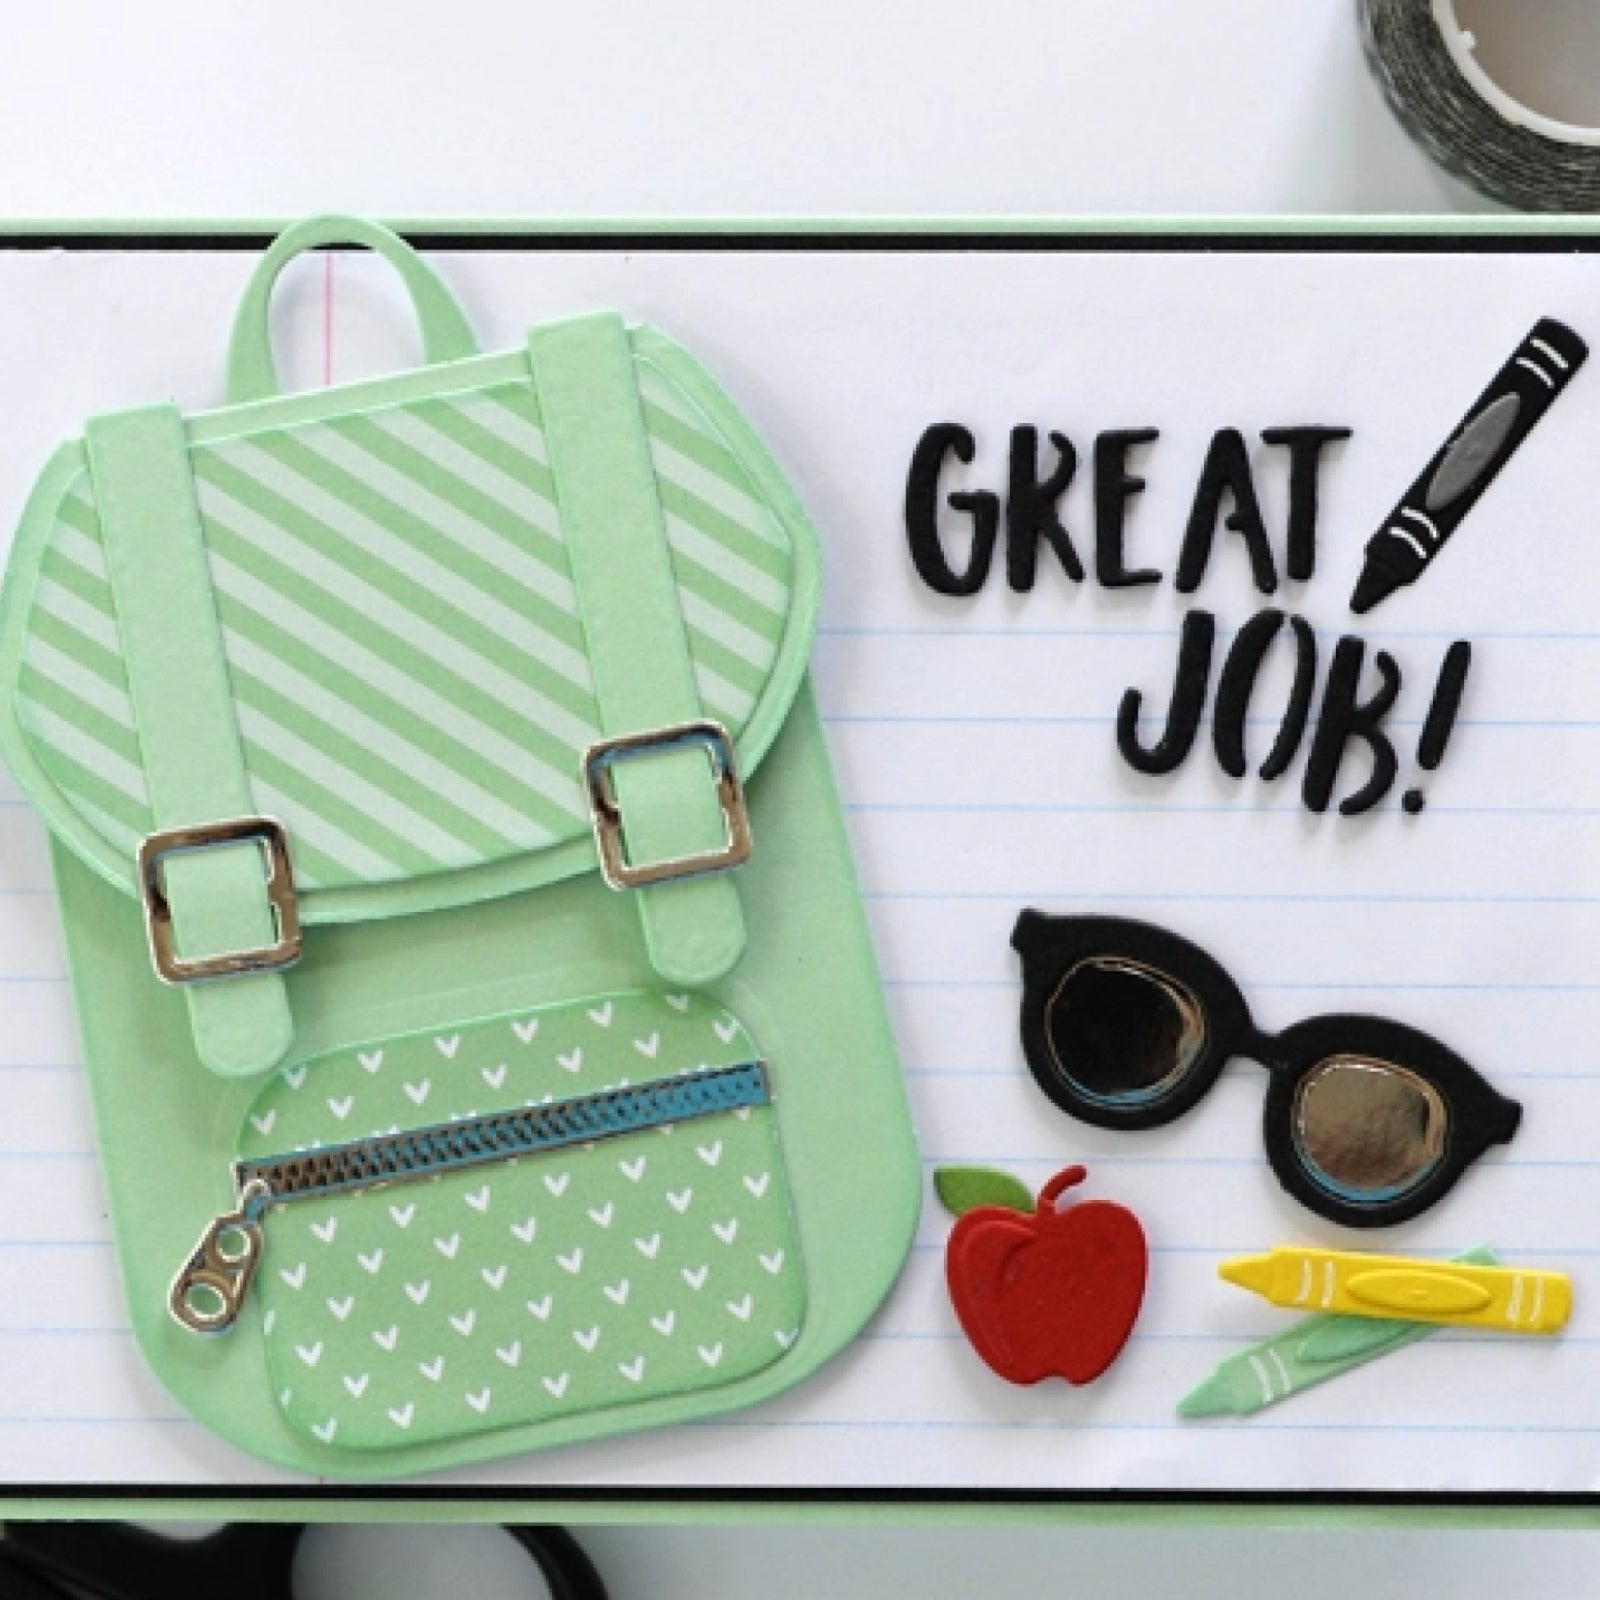 You Rule! Backpack w School Supplies Cutting & Embossing Dies